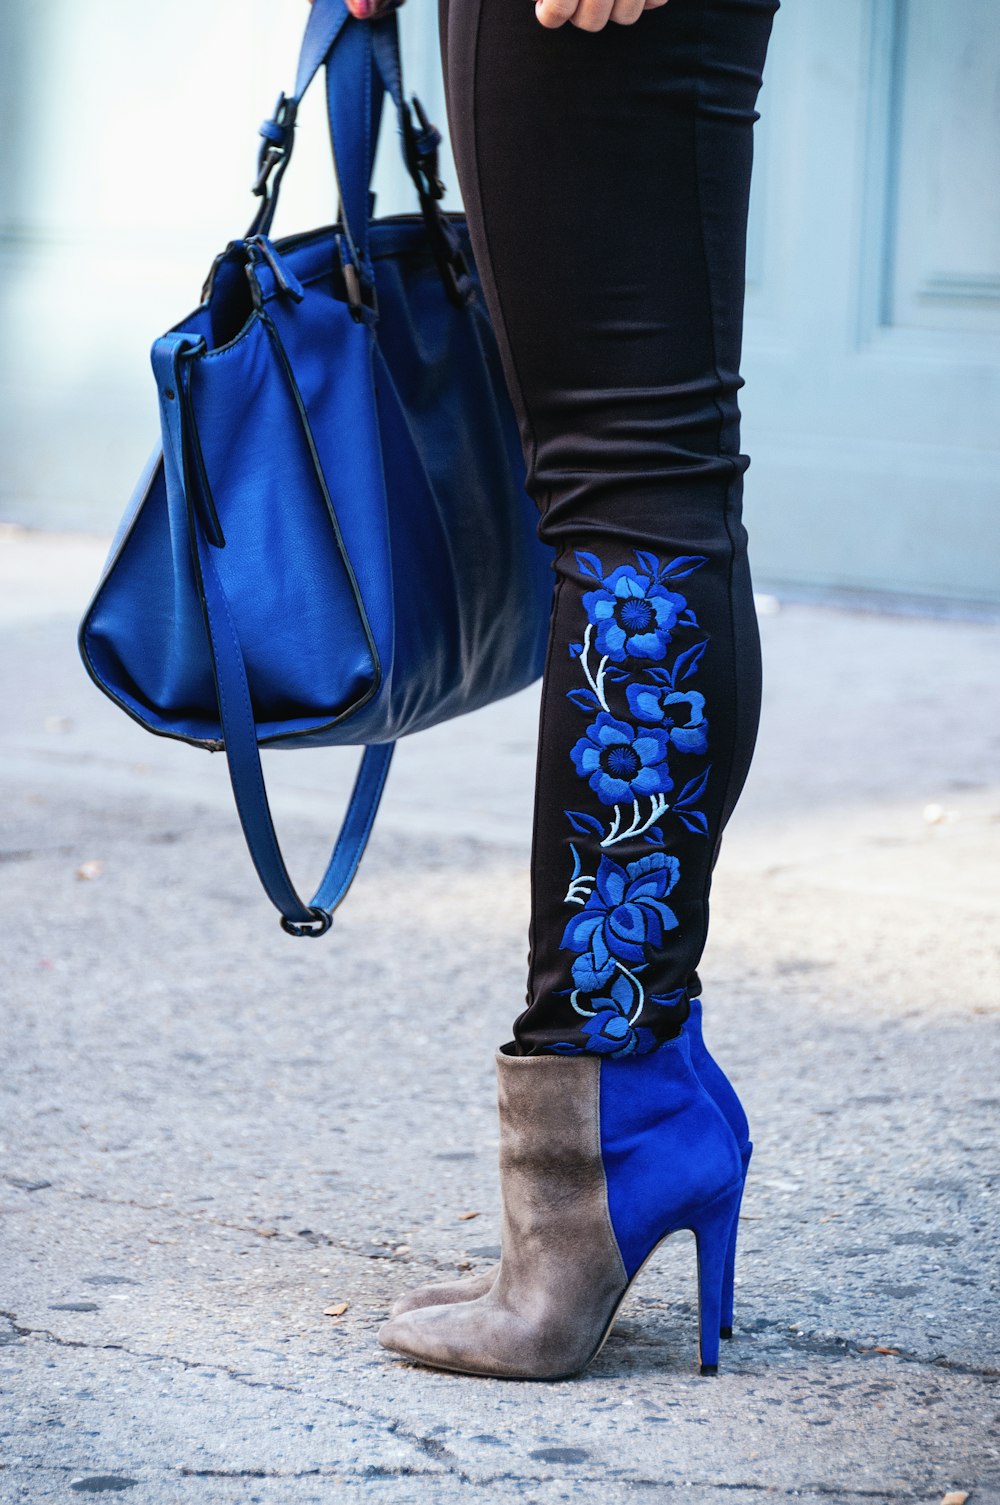 pessoa em leggings pretas, botas e carregando saco azul